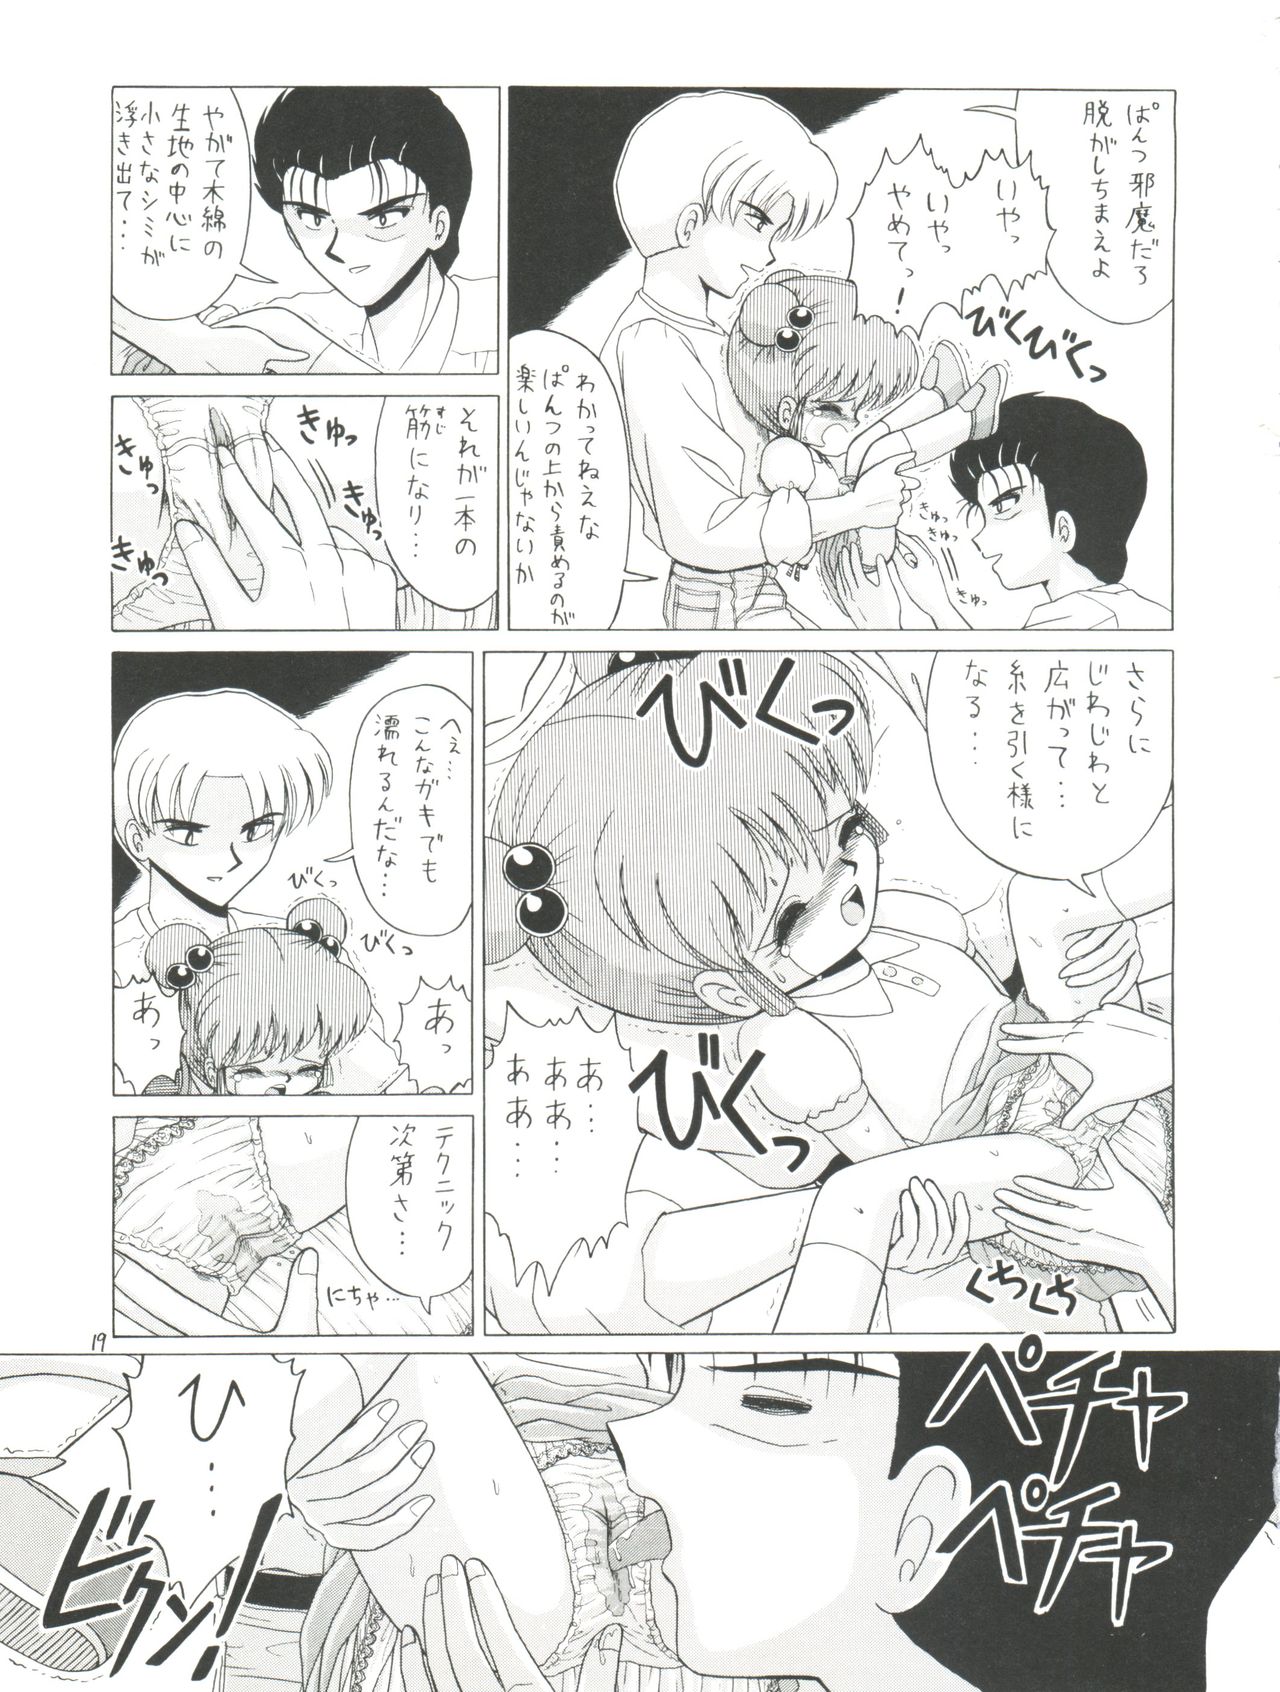 [Momo no Tsubomi (Various)] Lolikko LOVE 4 (Various) page 19 full